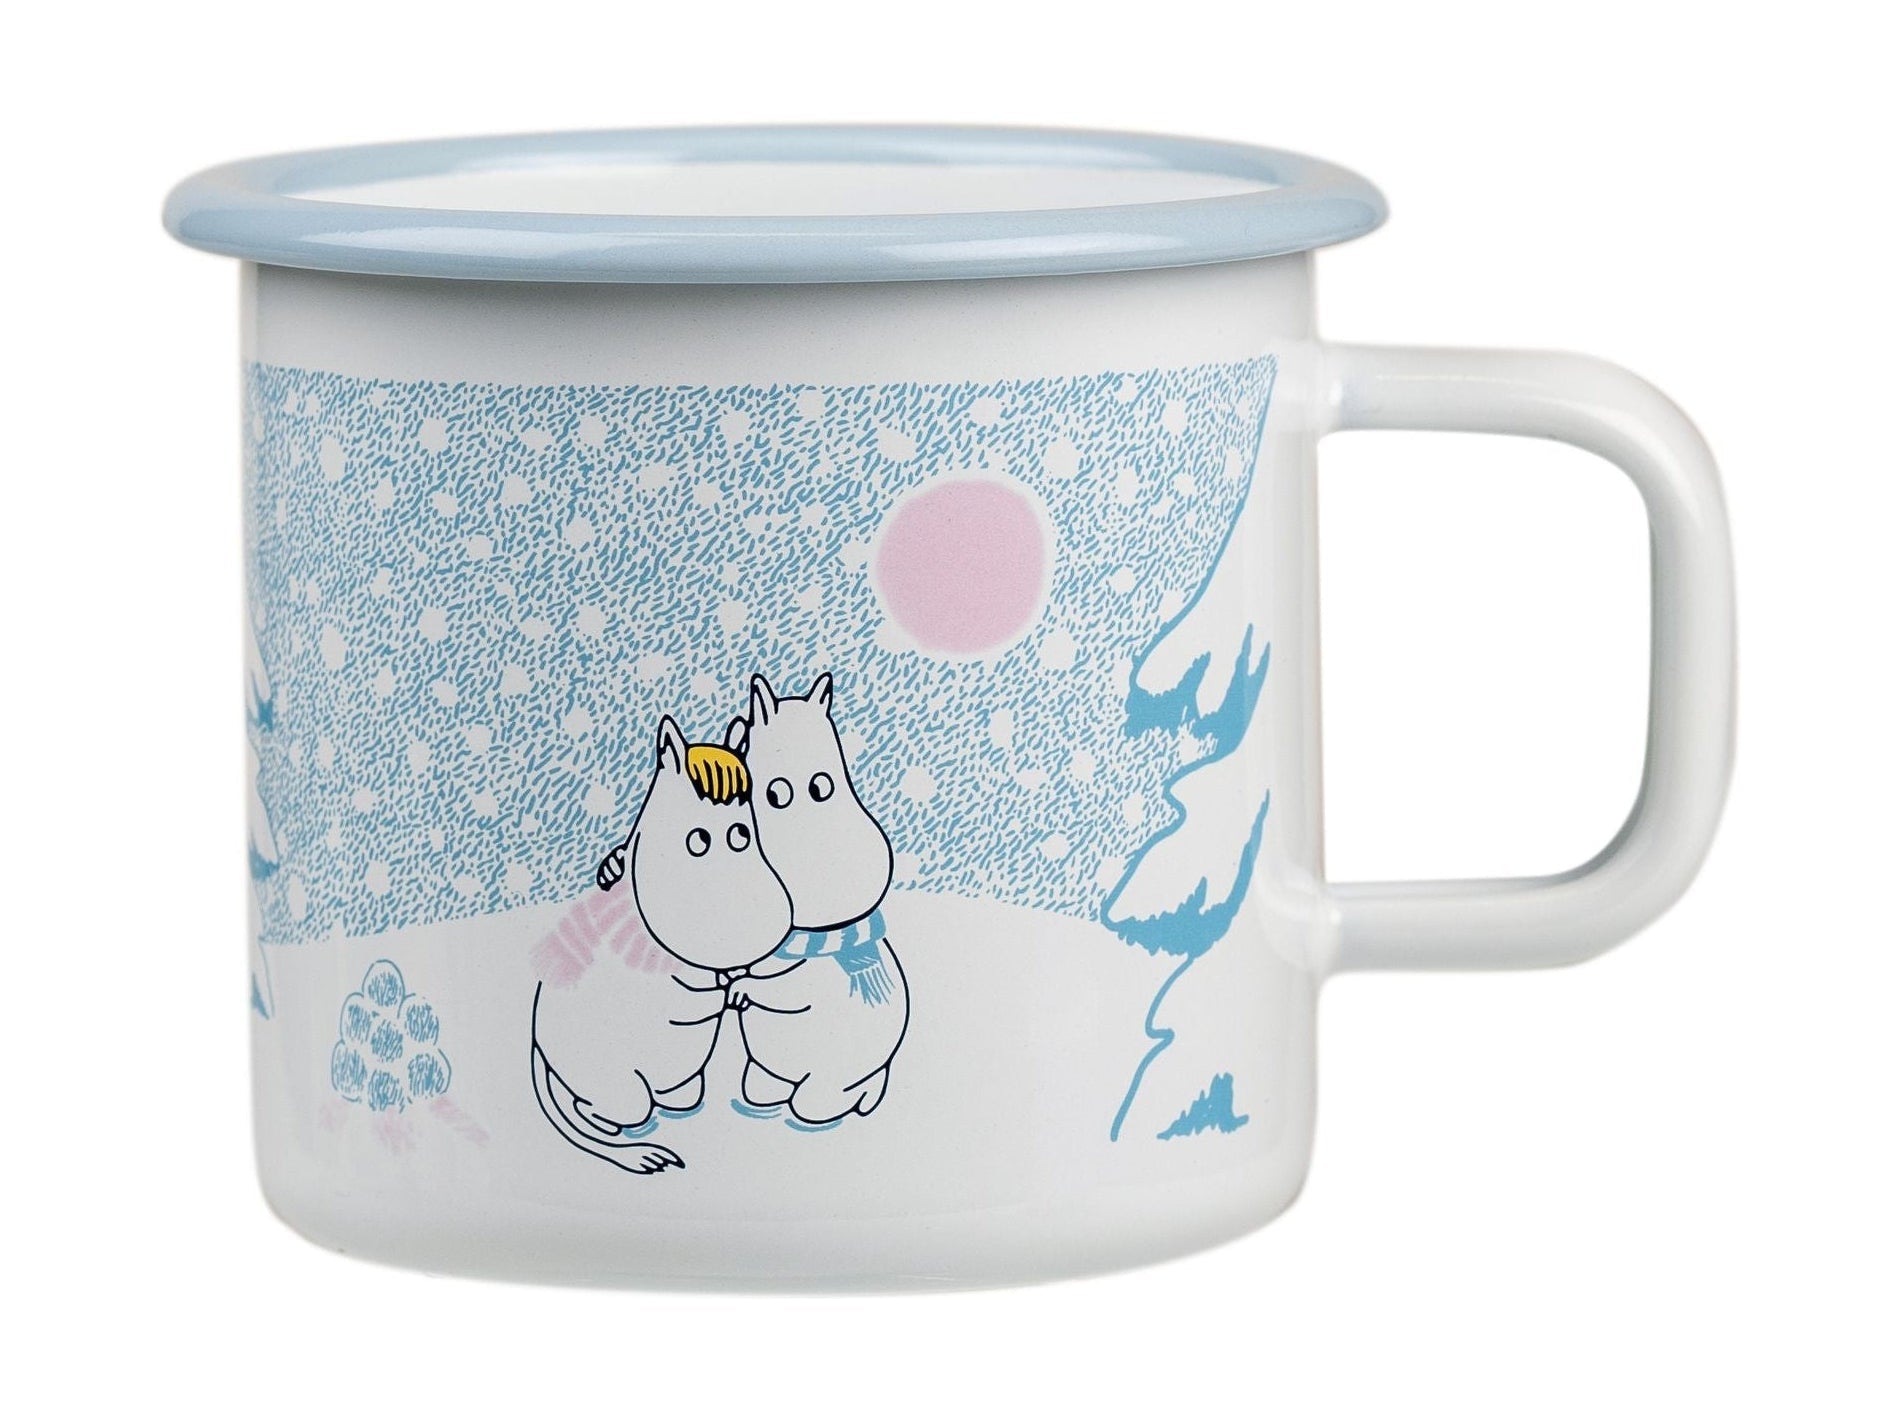 Muurla Moomin搪瓷杯让它下雪